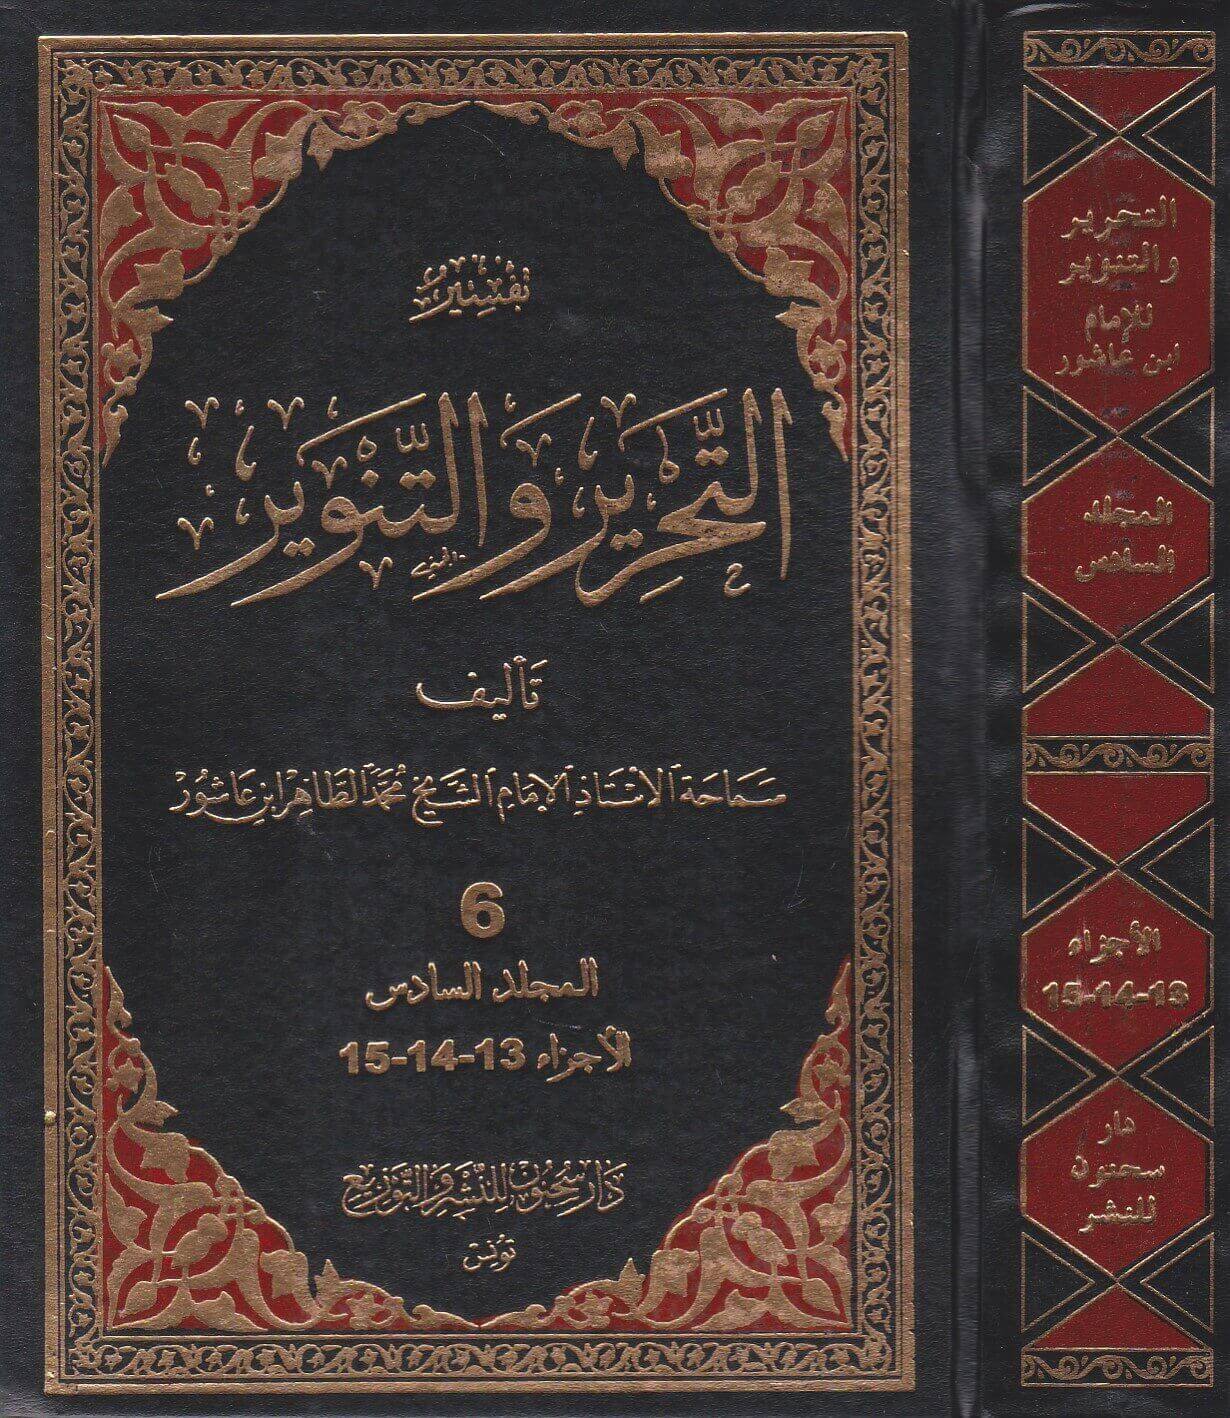 تحميل كتاب تفسير التحرير والتنوير pdf لـ محمد الطاهر بن عاشور 1